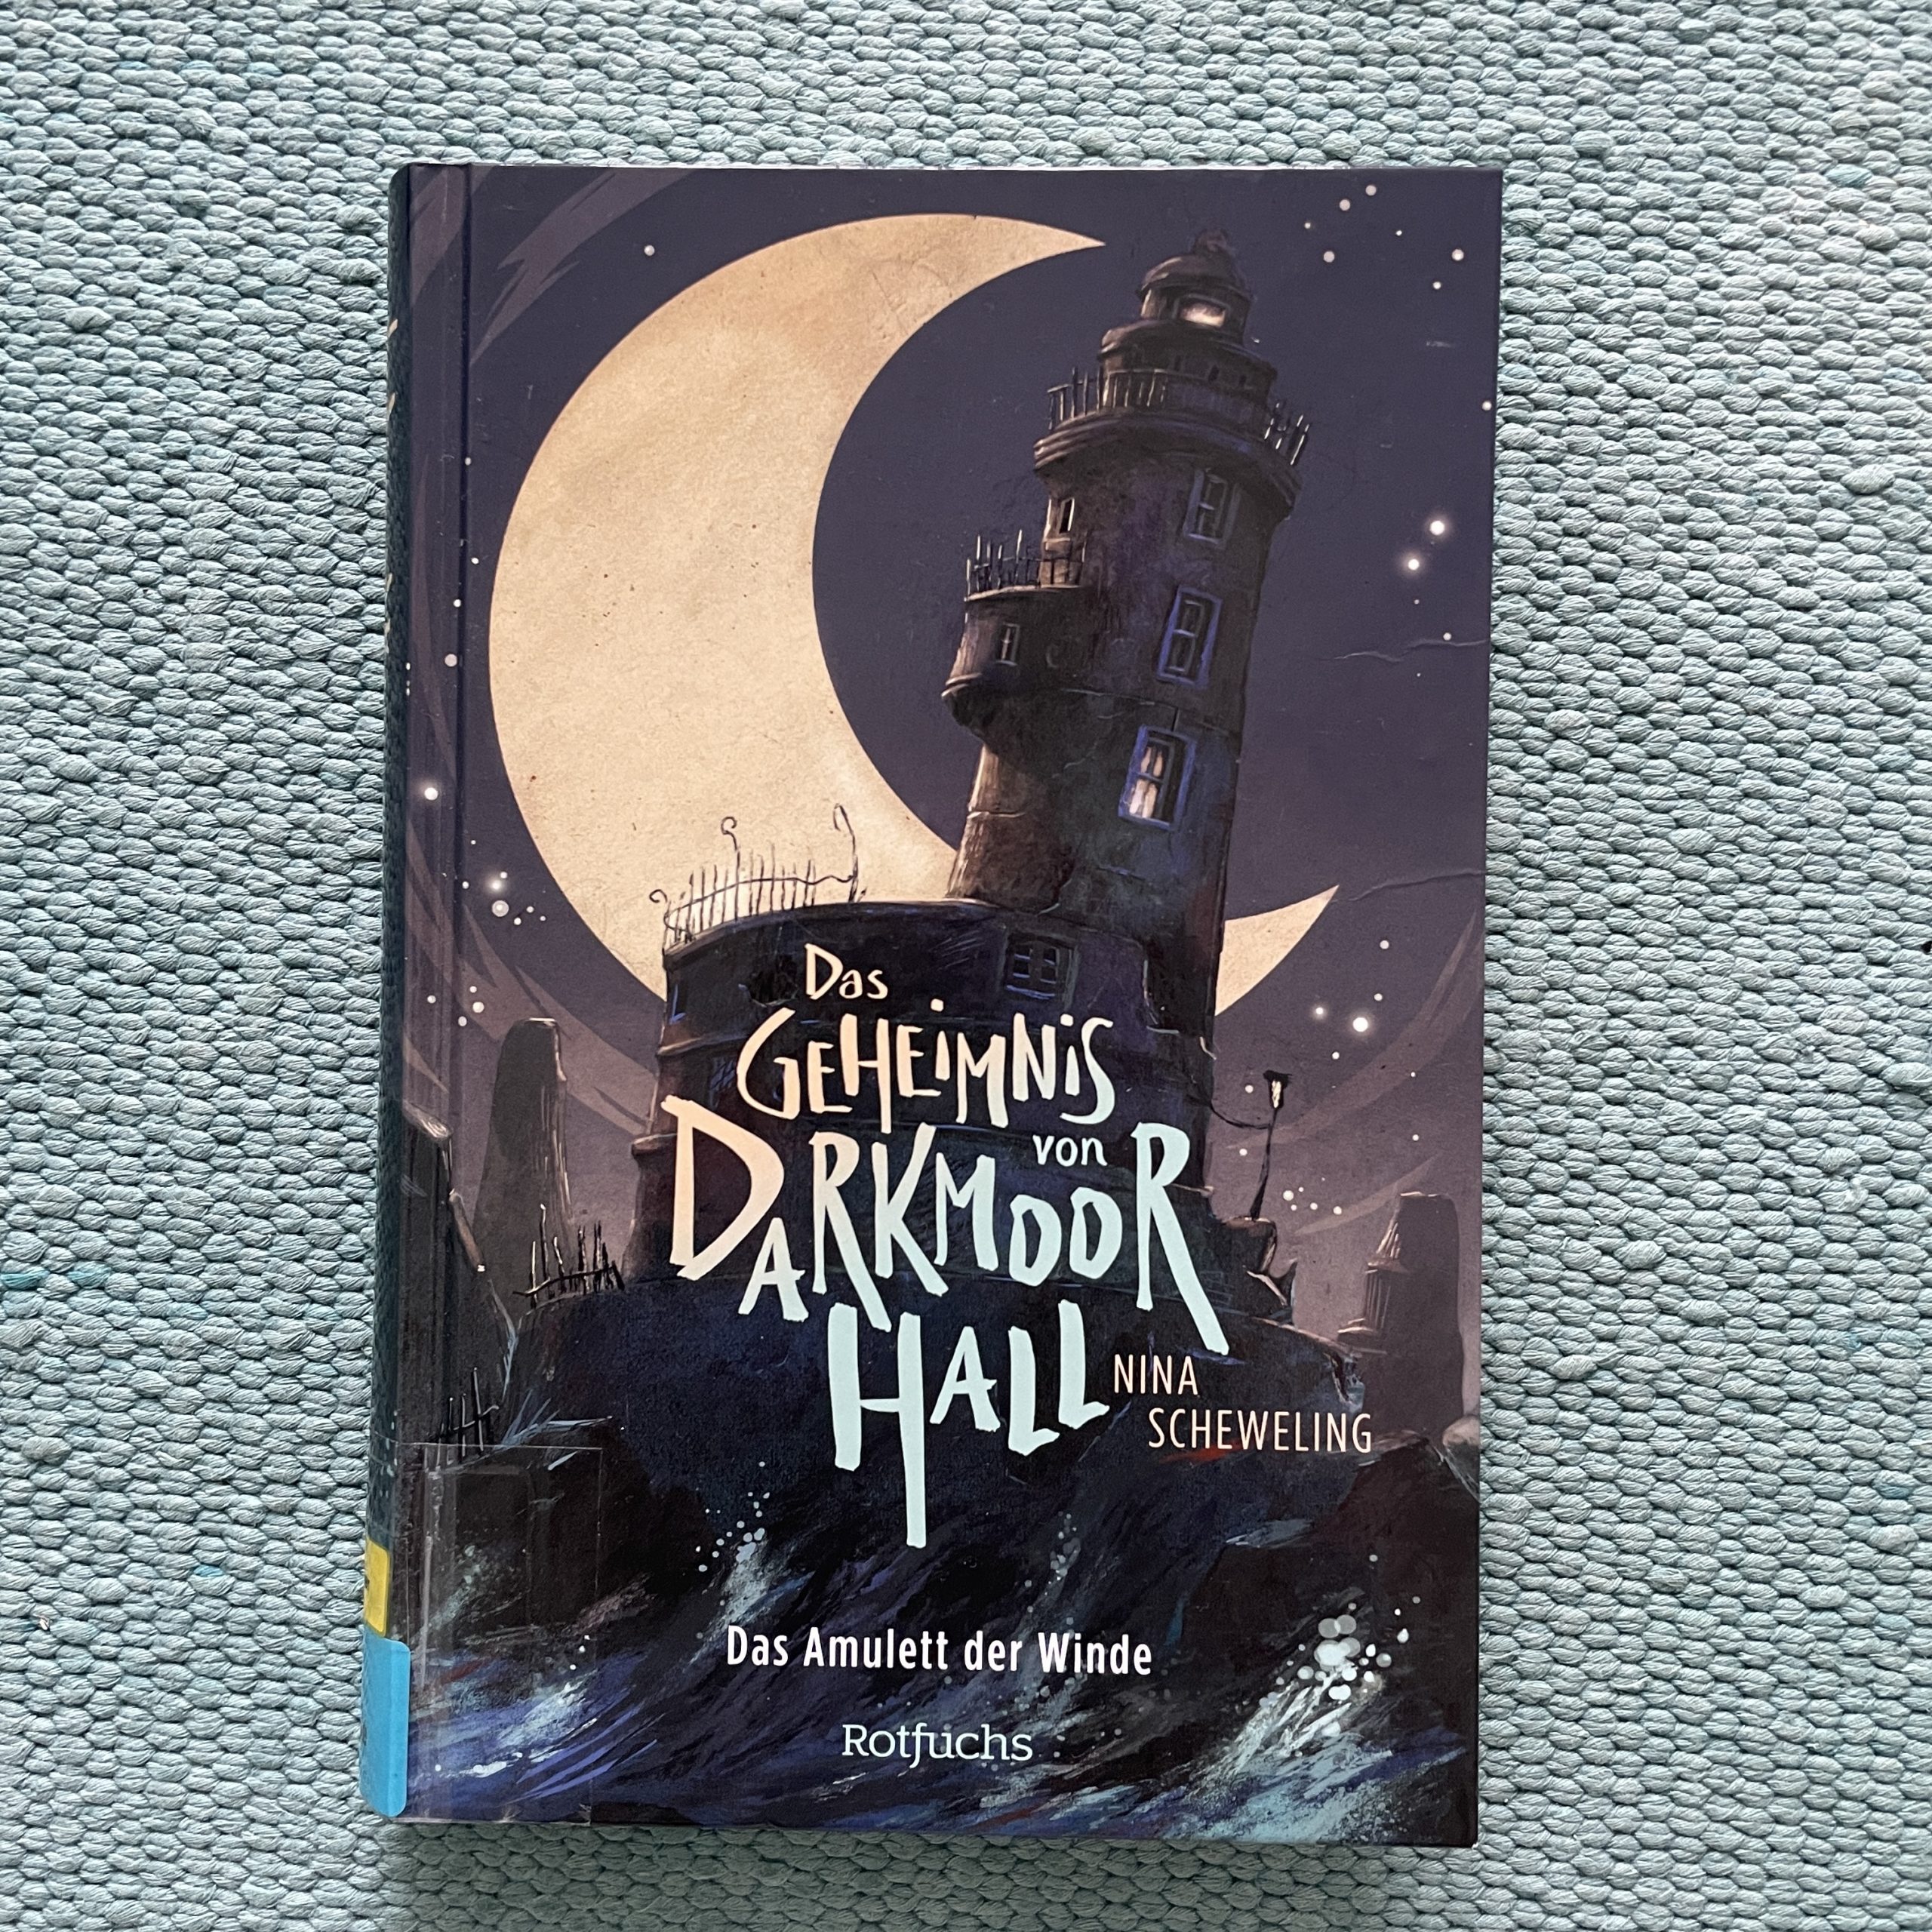 Das Geheimnis von Darkmoor Hall – Das Amulett der Winde